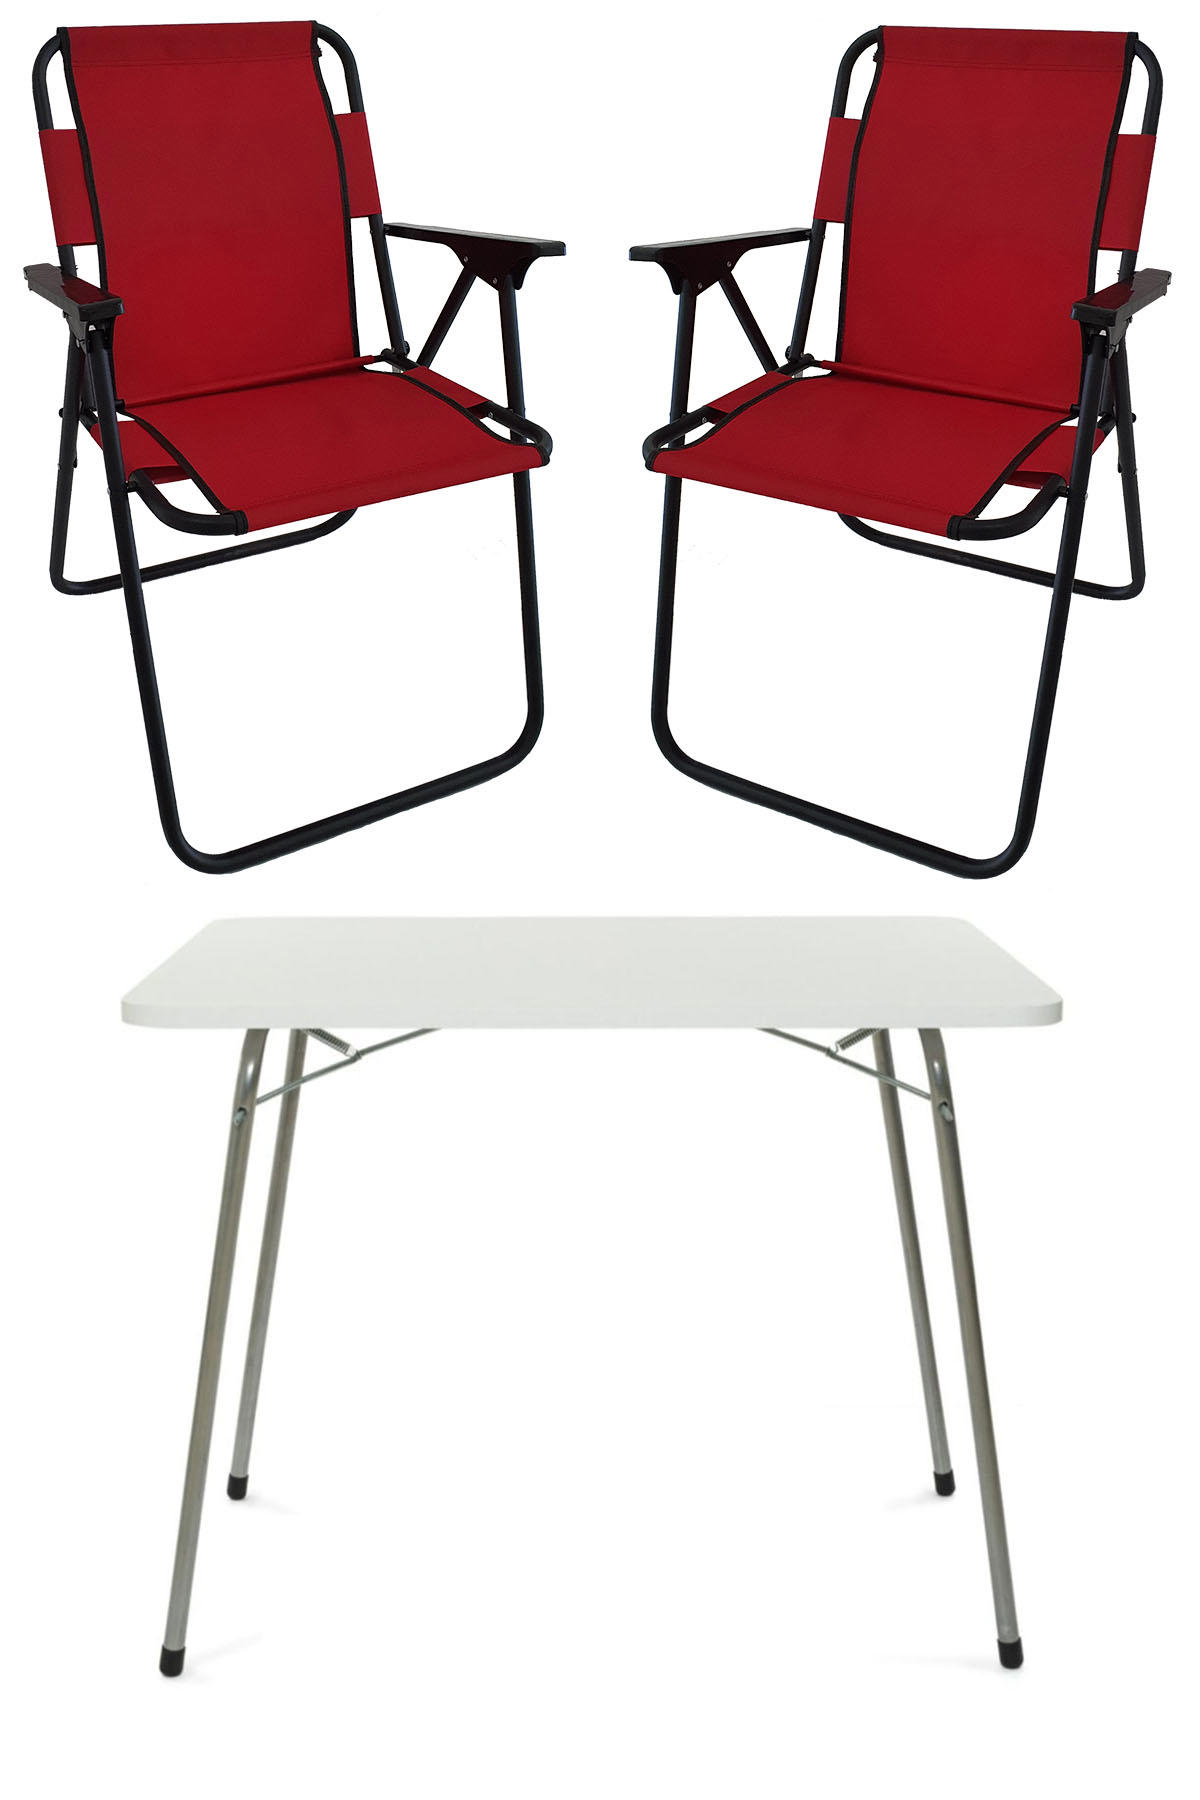 Bofigo 60 x 80 cm Tabureli Çantalı Dikdörtgen Granit Katlanır Kamp Masası Beyaz + 2 Adet Katlanır Sandalye Kırmız